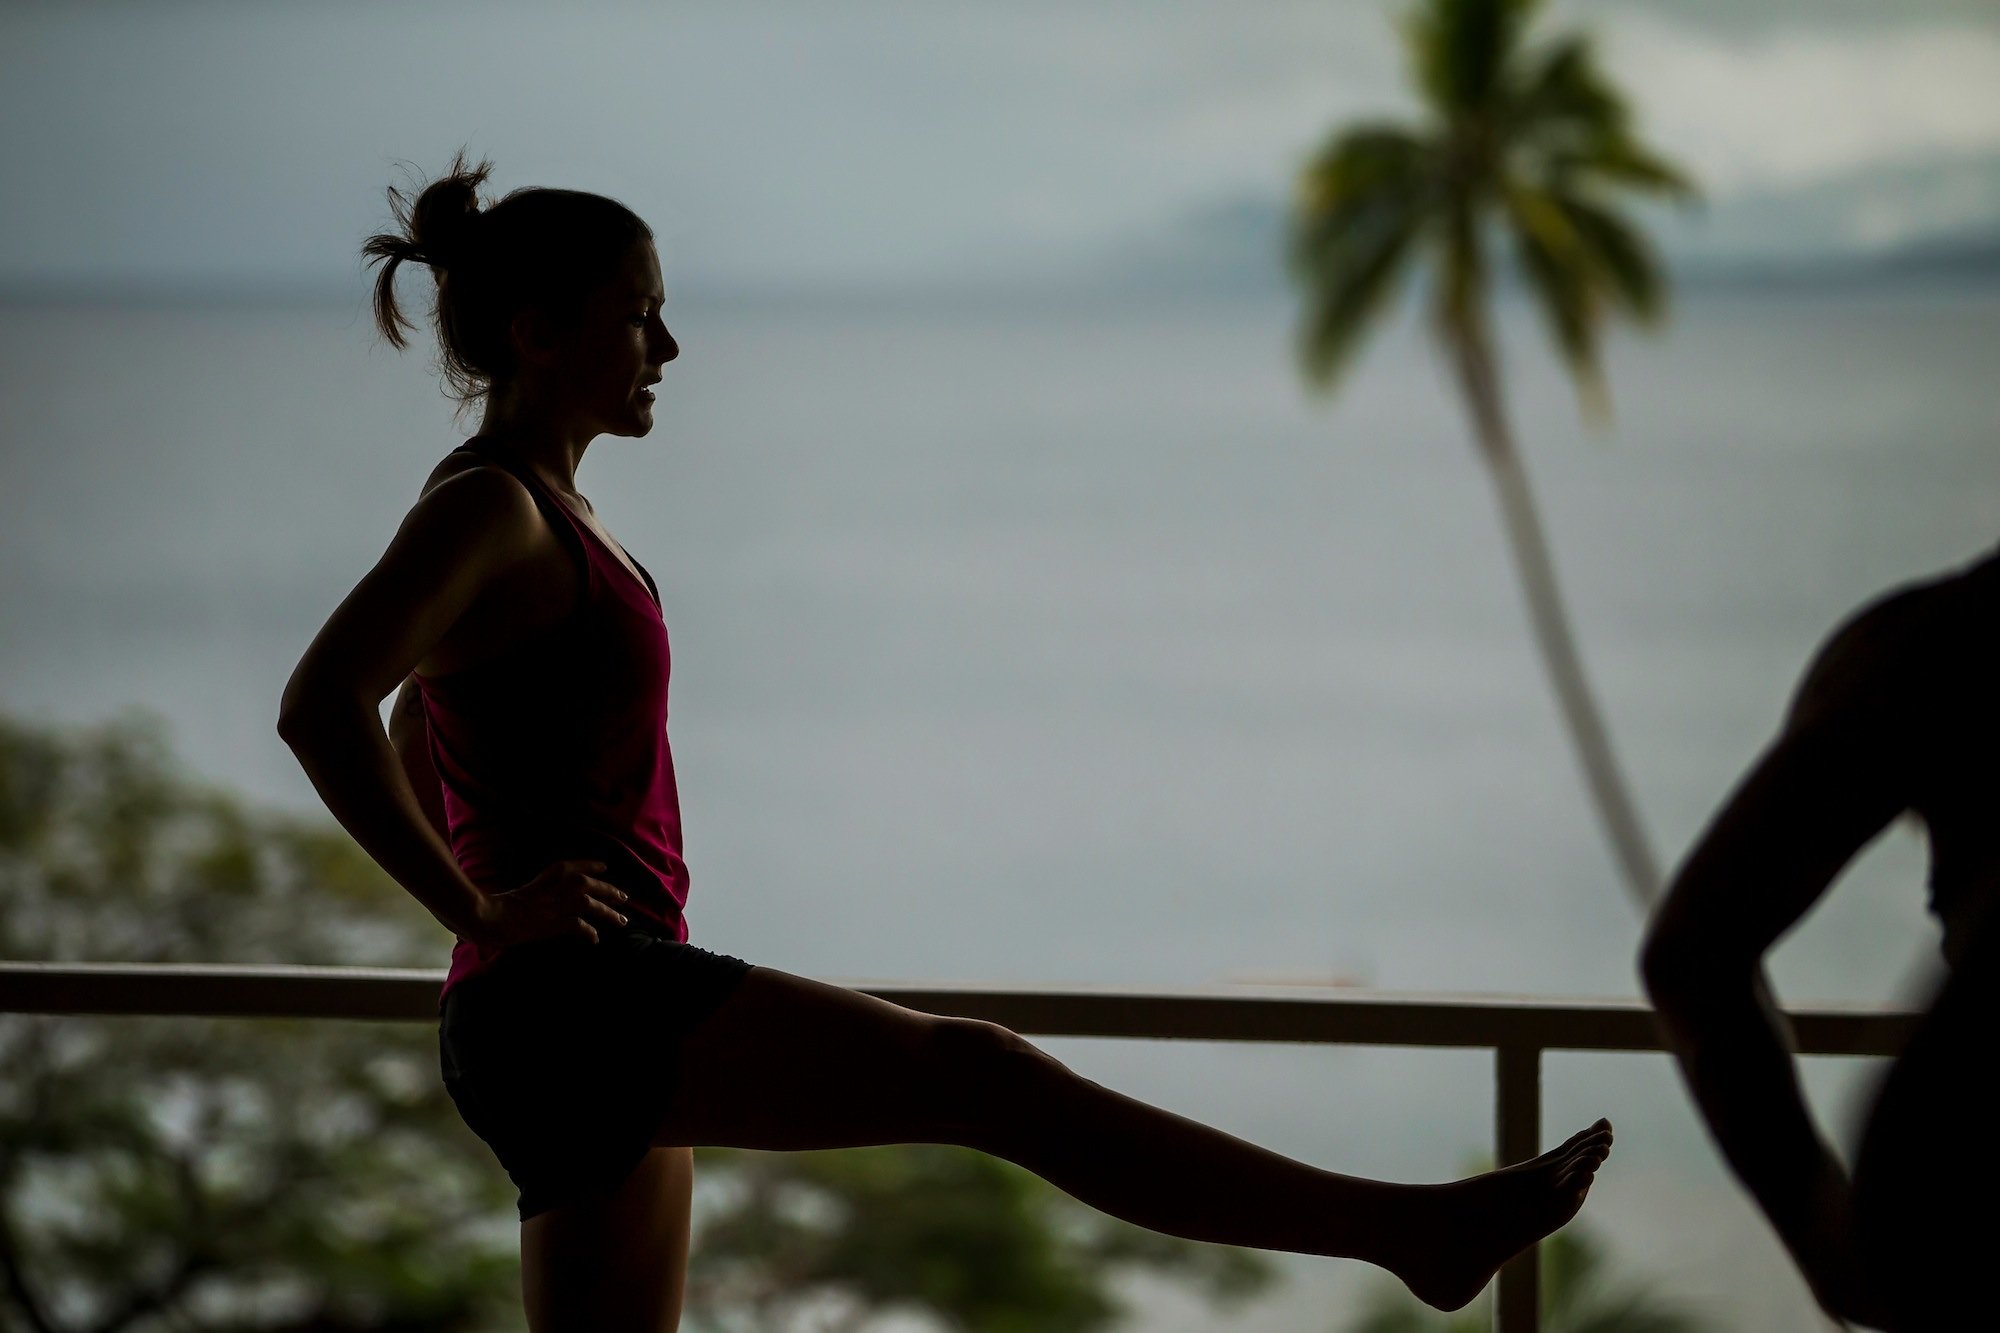 Yoga underway at Daku Resort, Savusavu.